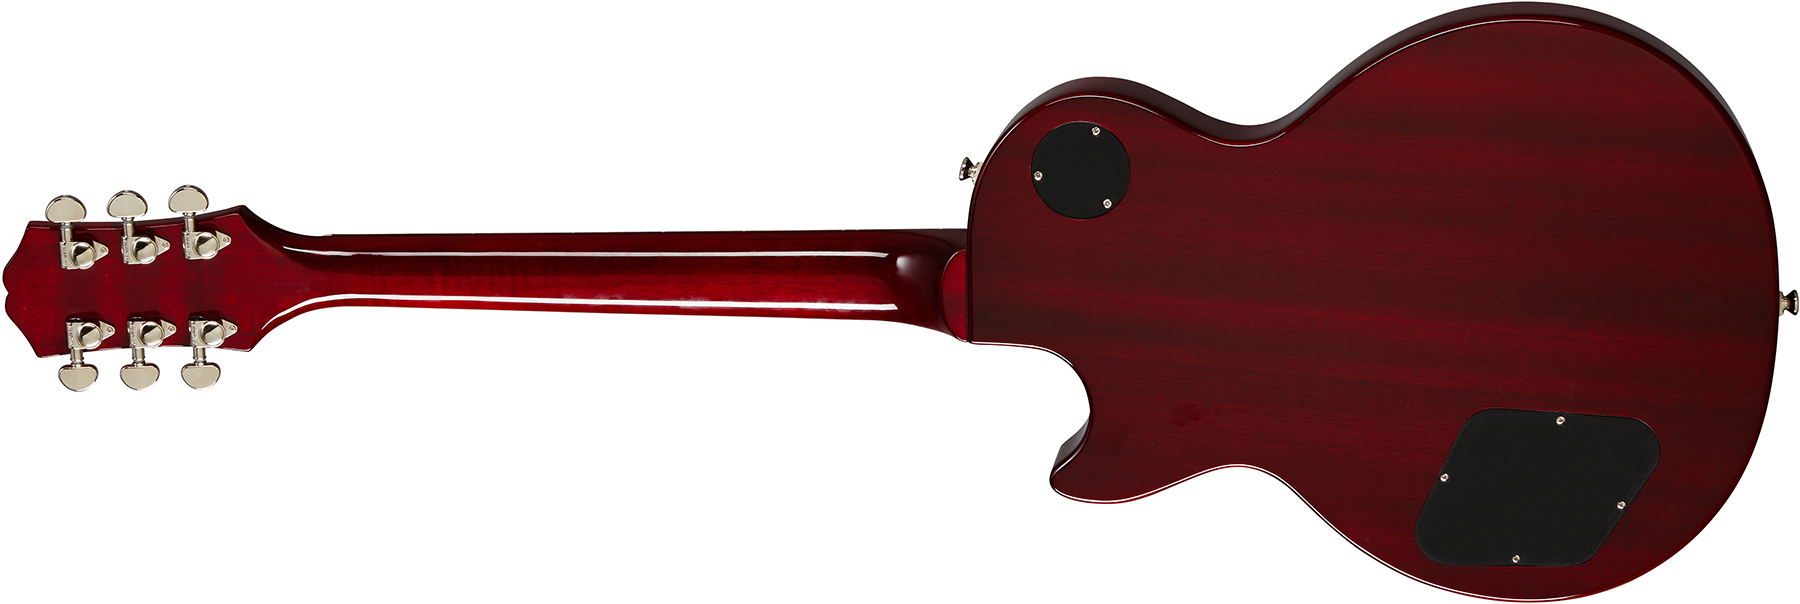 Epiphone Les Paul Studio 2h Ht Pf - Wine Red - Guitarra eléctrica de corte único. - Variation 1